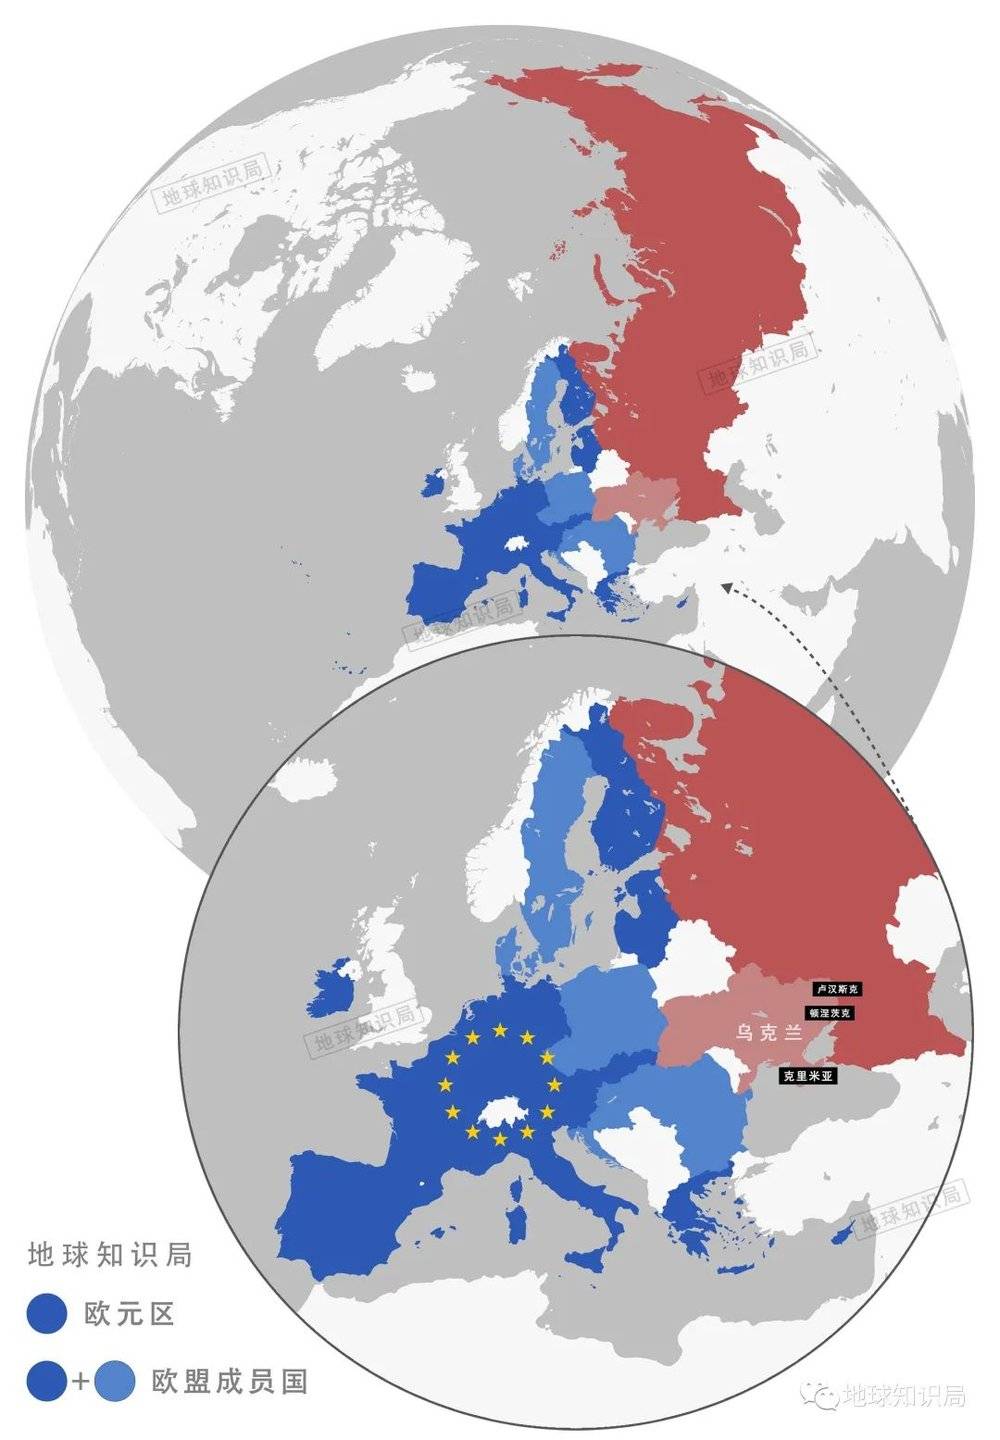 确实，欧盟≠欧元区，比如瑞典用的是克朗，波兰用的是兹罗提